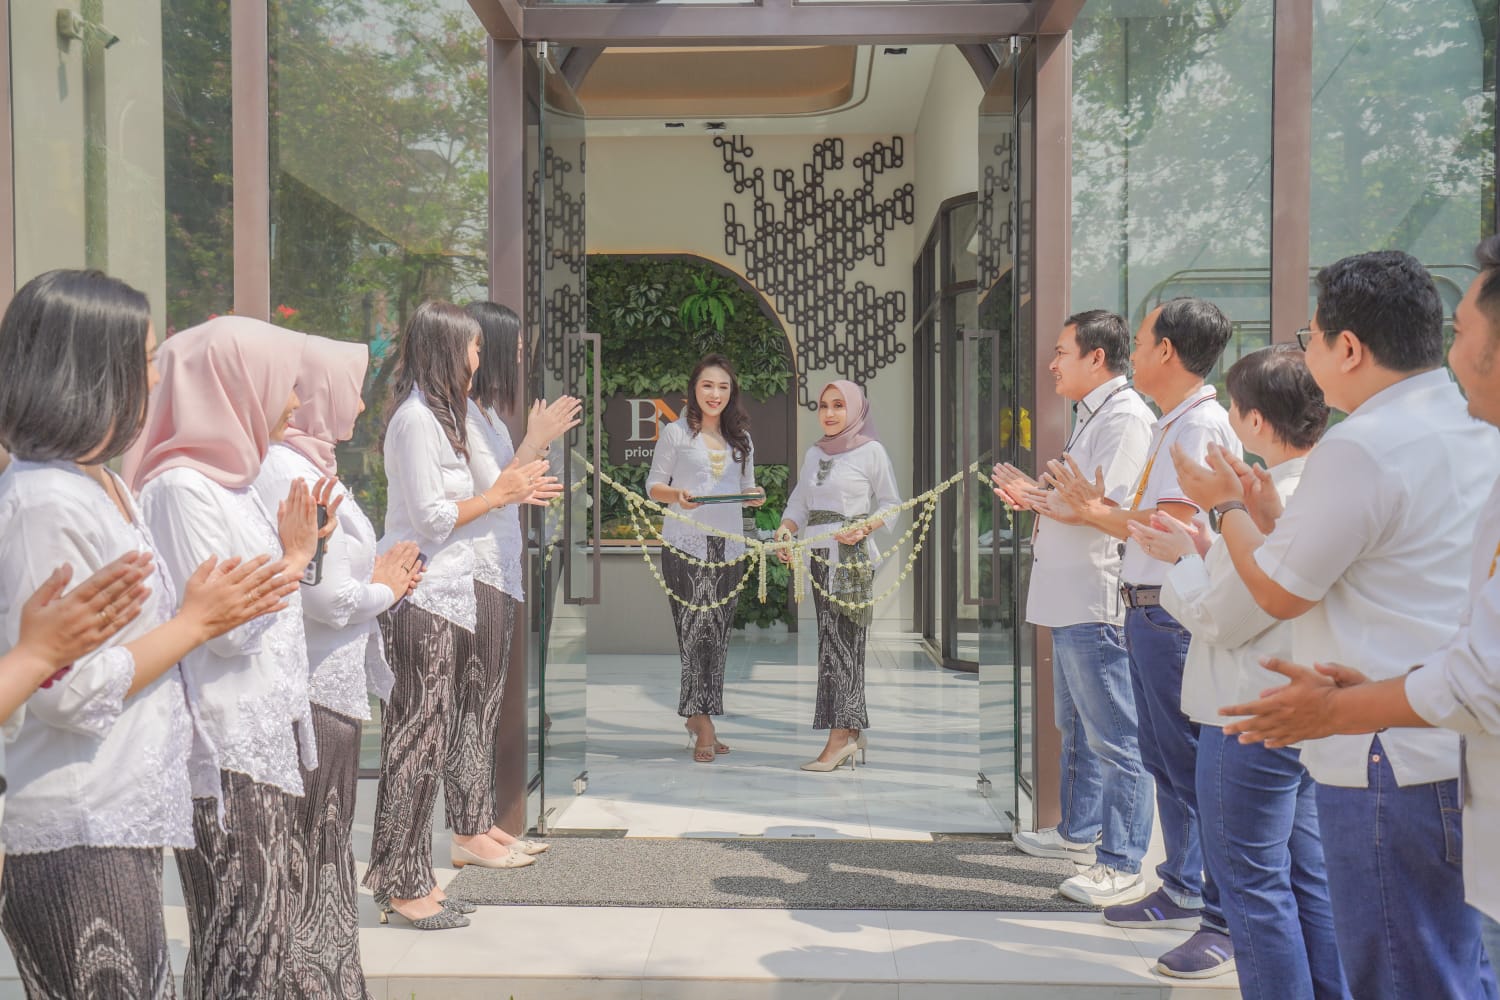 BNC Perluas Jangkauan Perbankan Digital dengan Smart Branch Baru di Surabaya